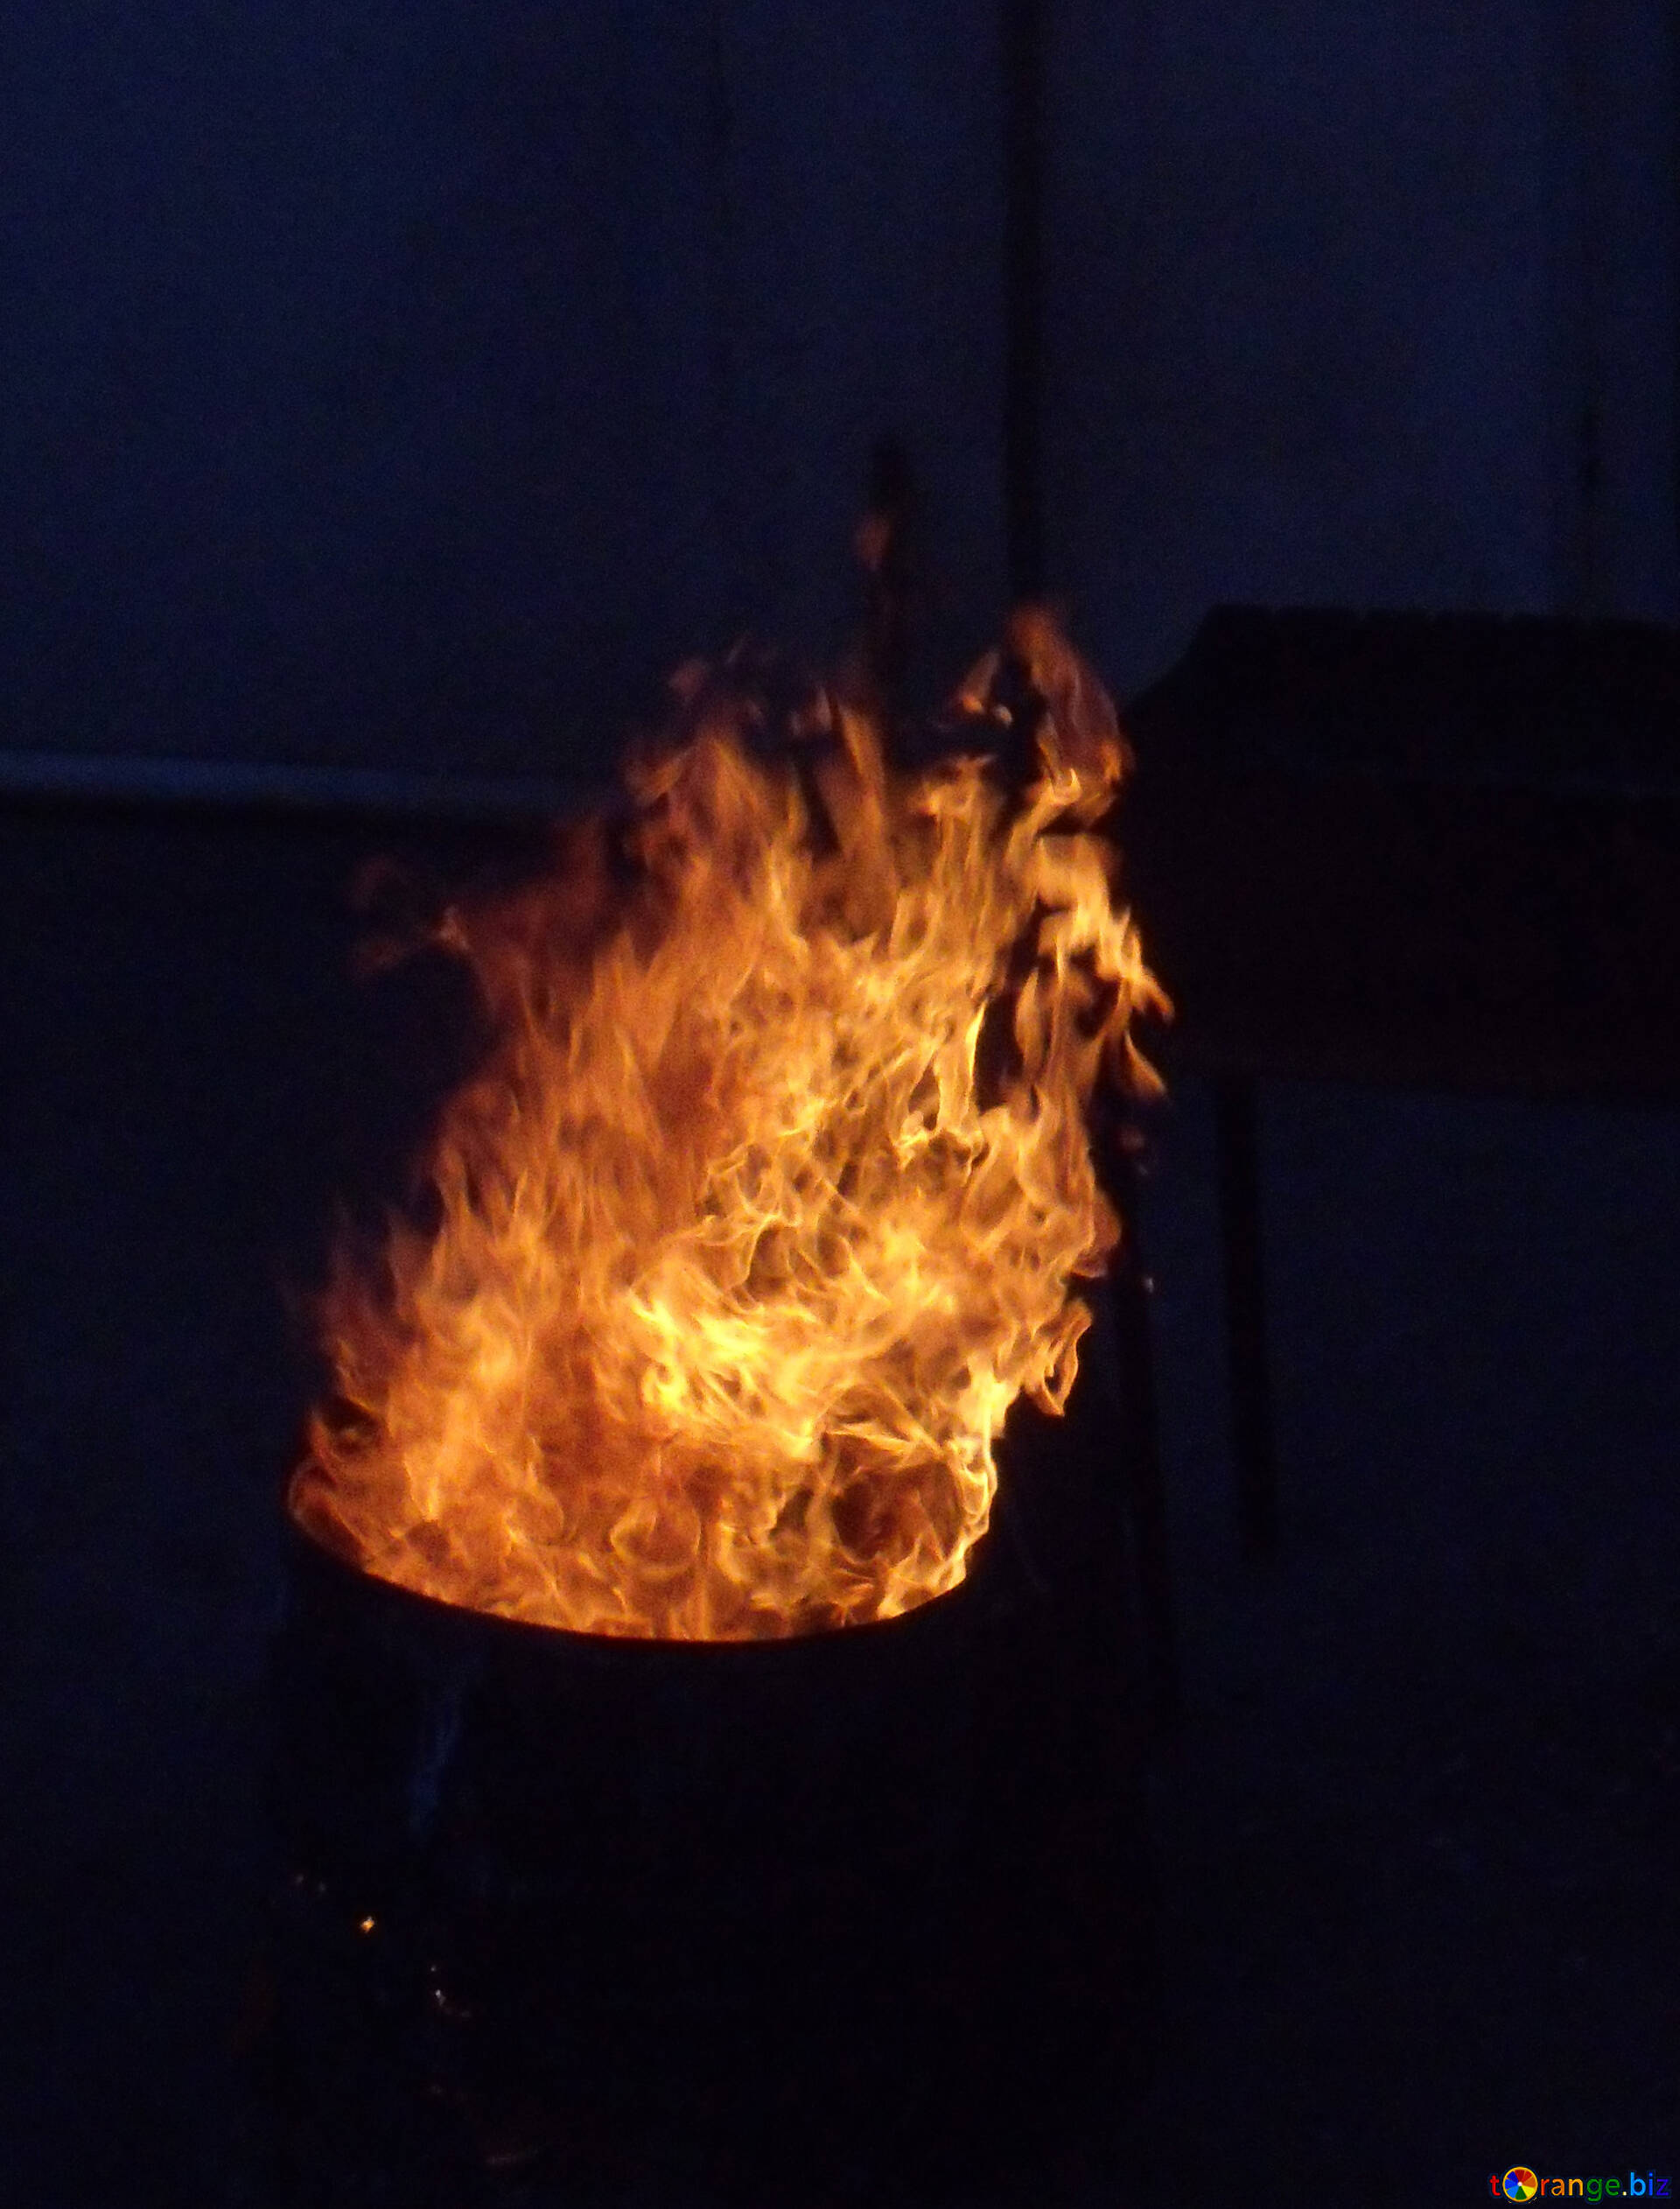 Le feu dans le baril photo stock. Image du incendiez - 70098140